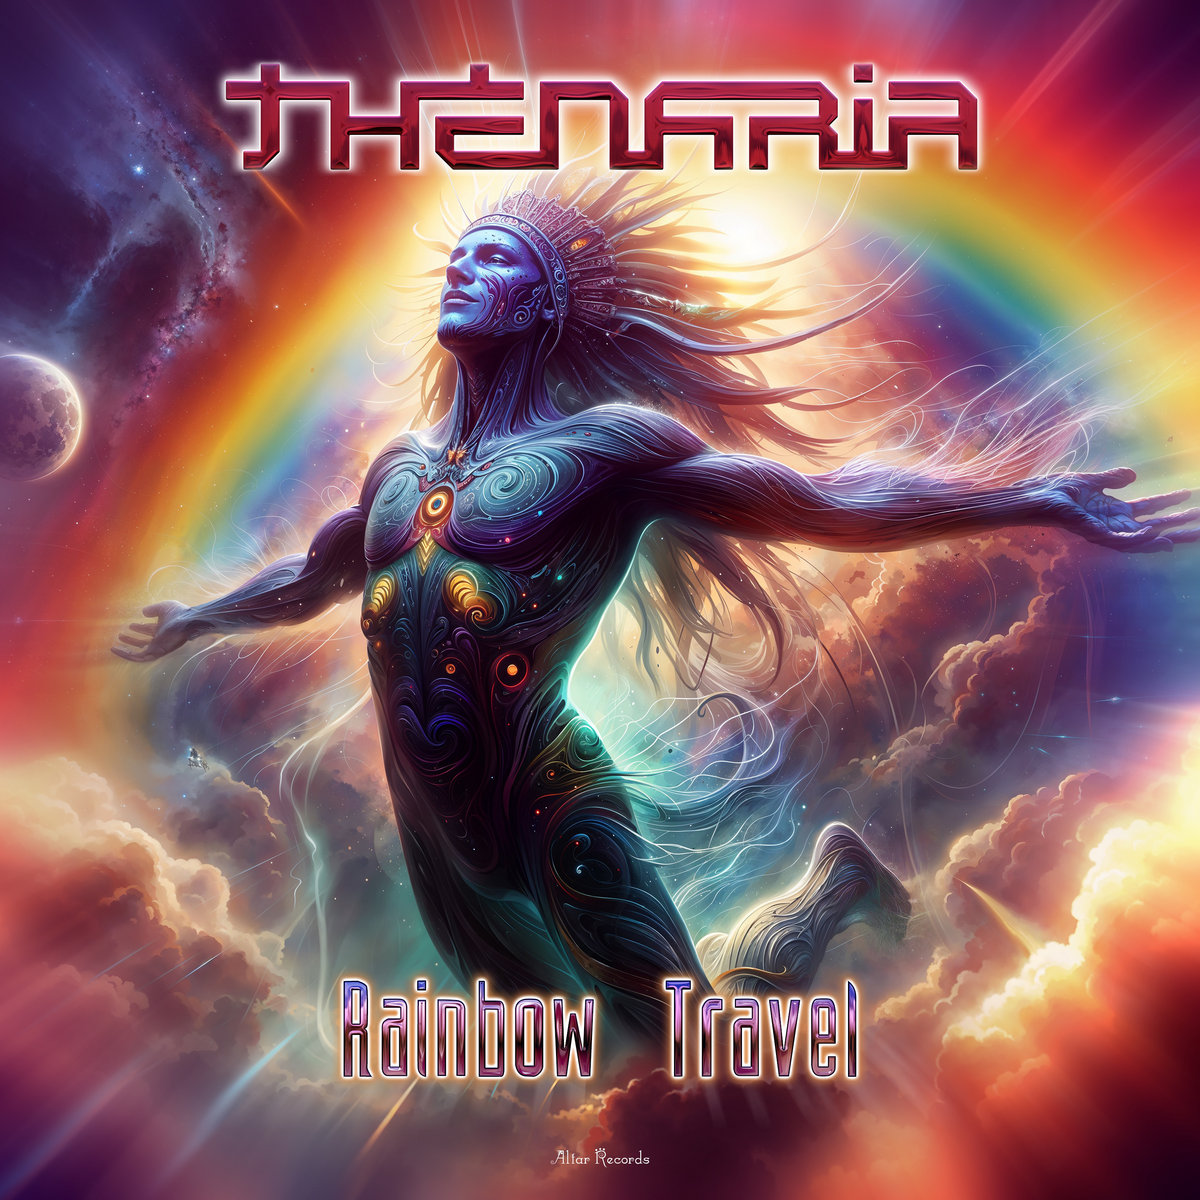 Thenaria - Omnium (Original Mix)